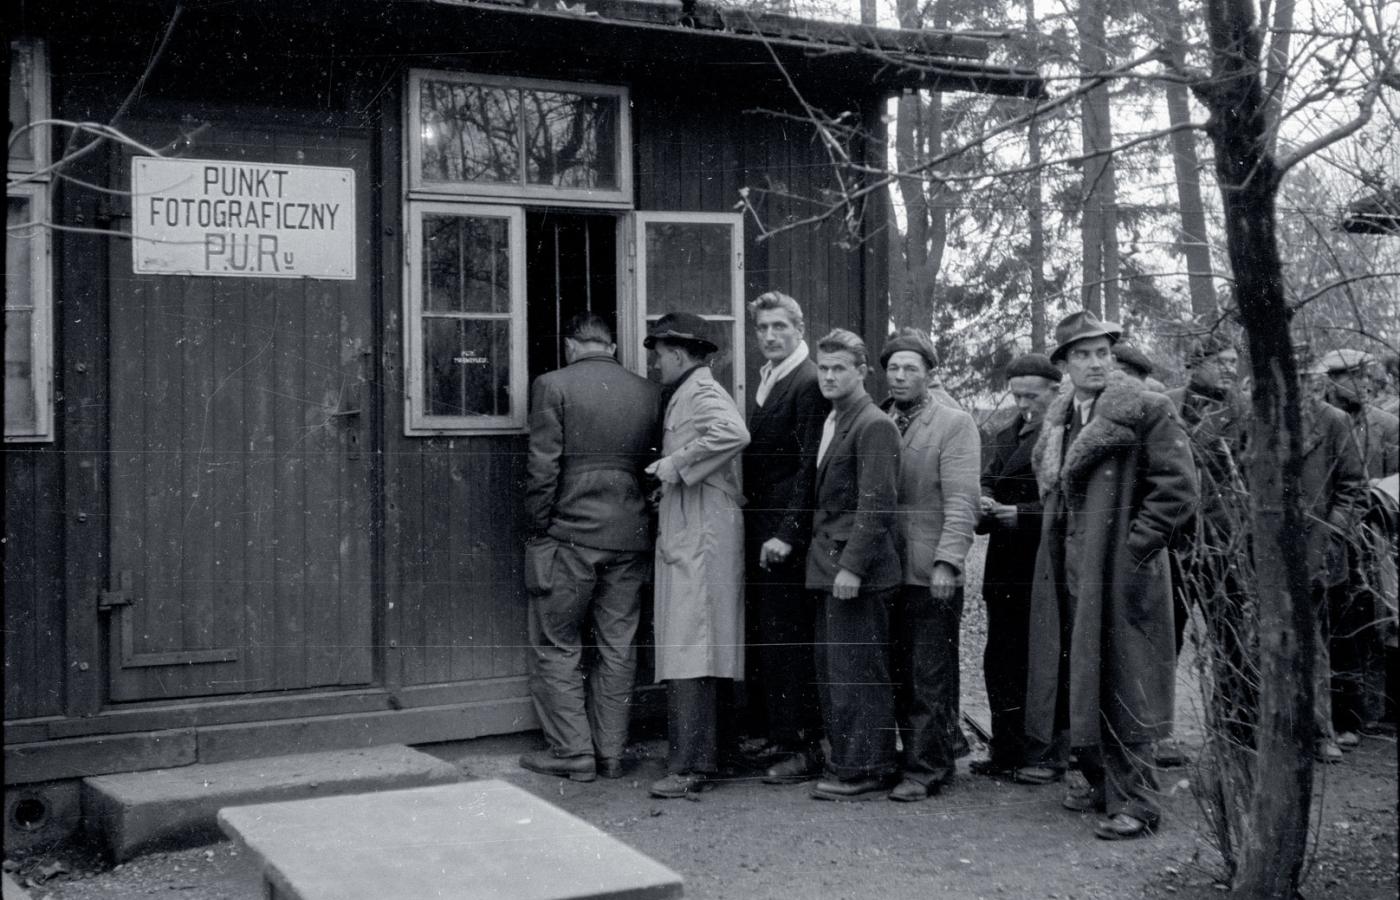 Reemigranci z Francji w kolejce do punktu fotograficznego PUR przy dworcu kolejowym w Międzylesiu, listopad 1948 r.